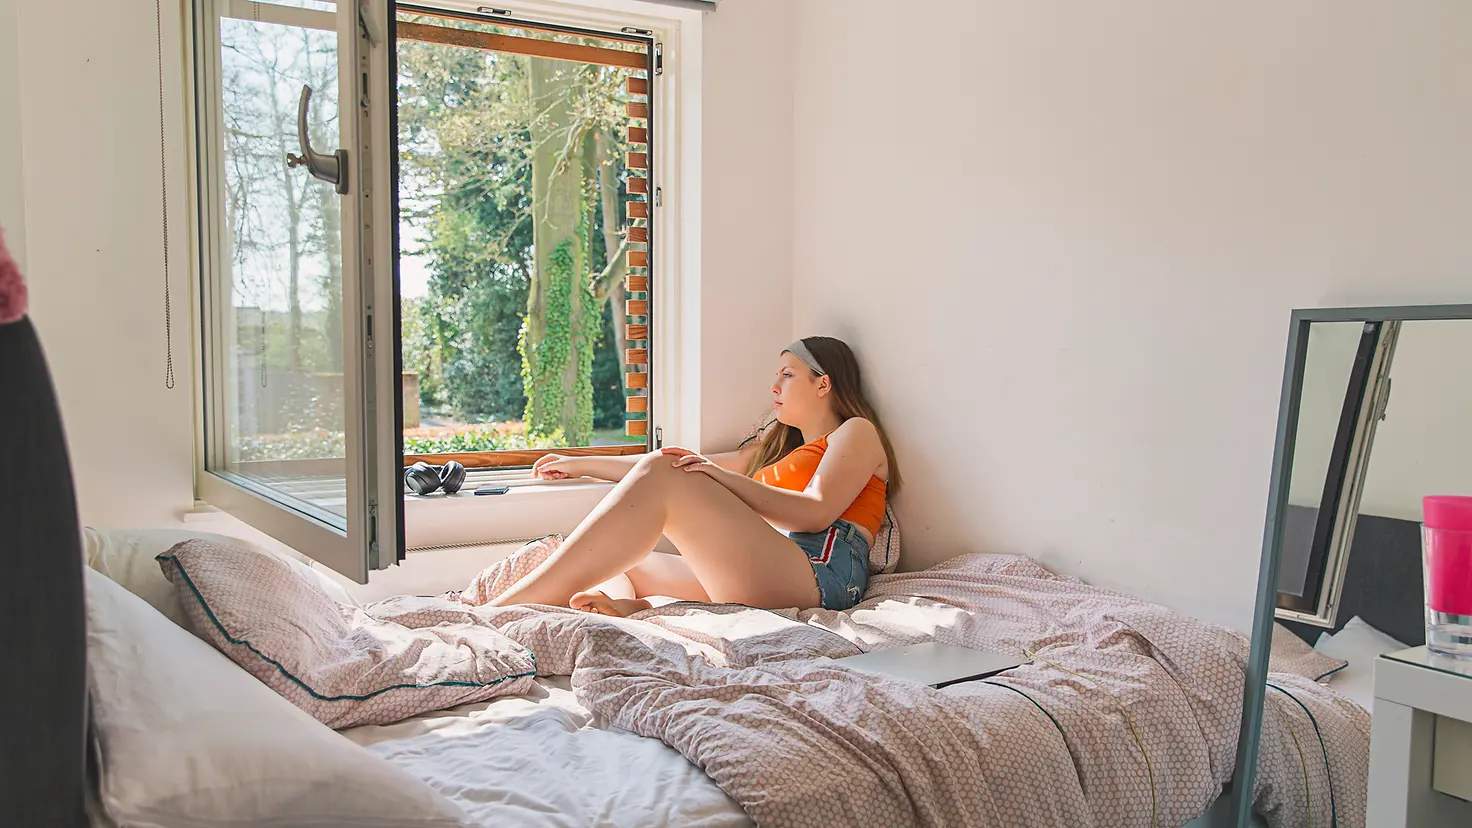 Eine junge Frau sitzt auf dem Bett und schaut nachdenklich aus dem Fenster